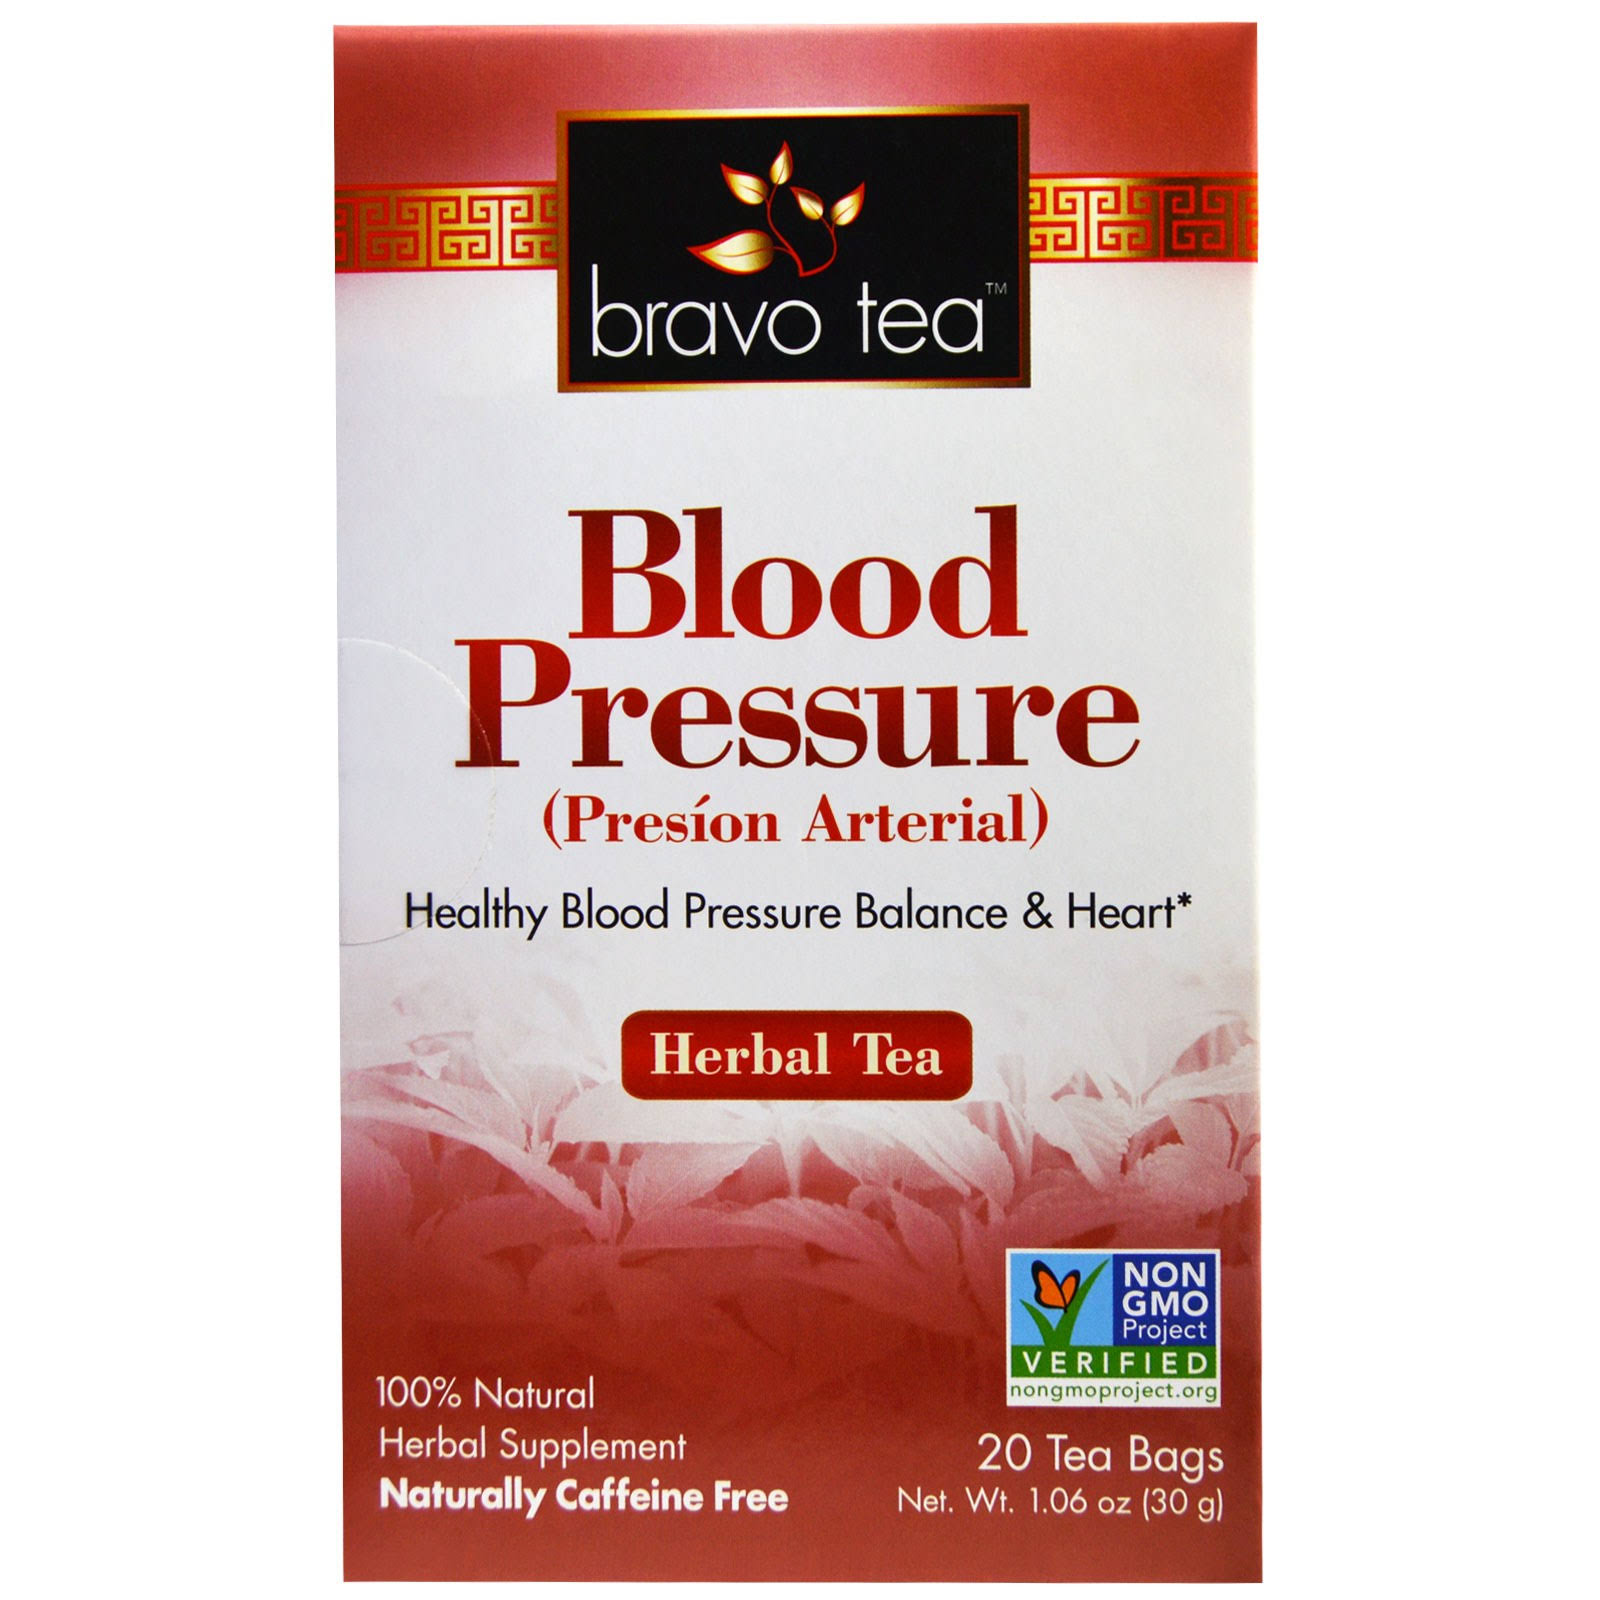 Bravo Tea Blood Pressure Herbal Tea - Caffeine Free, 20 Tea Bags